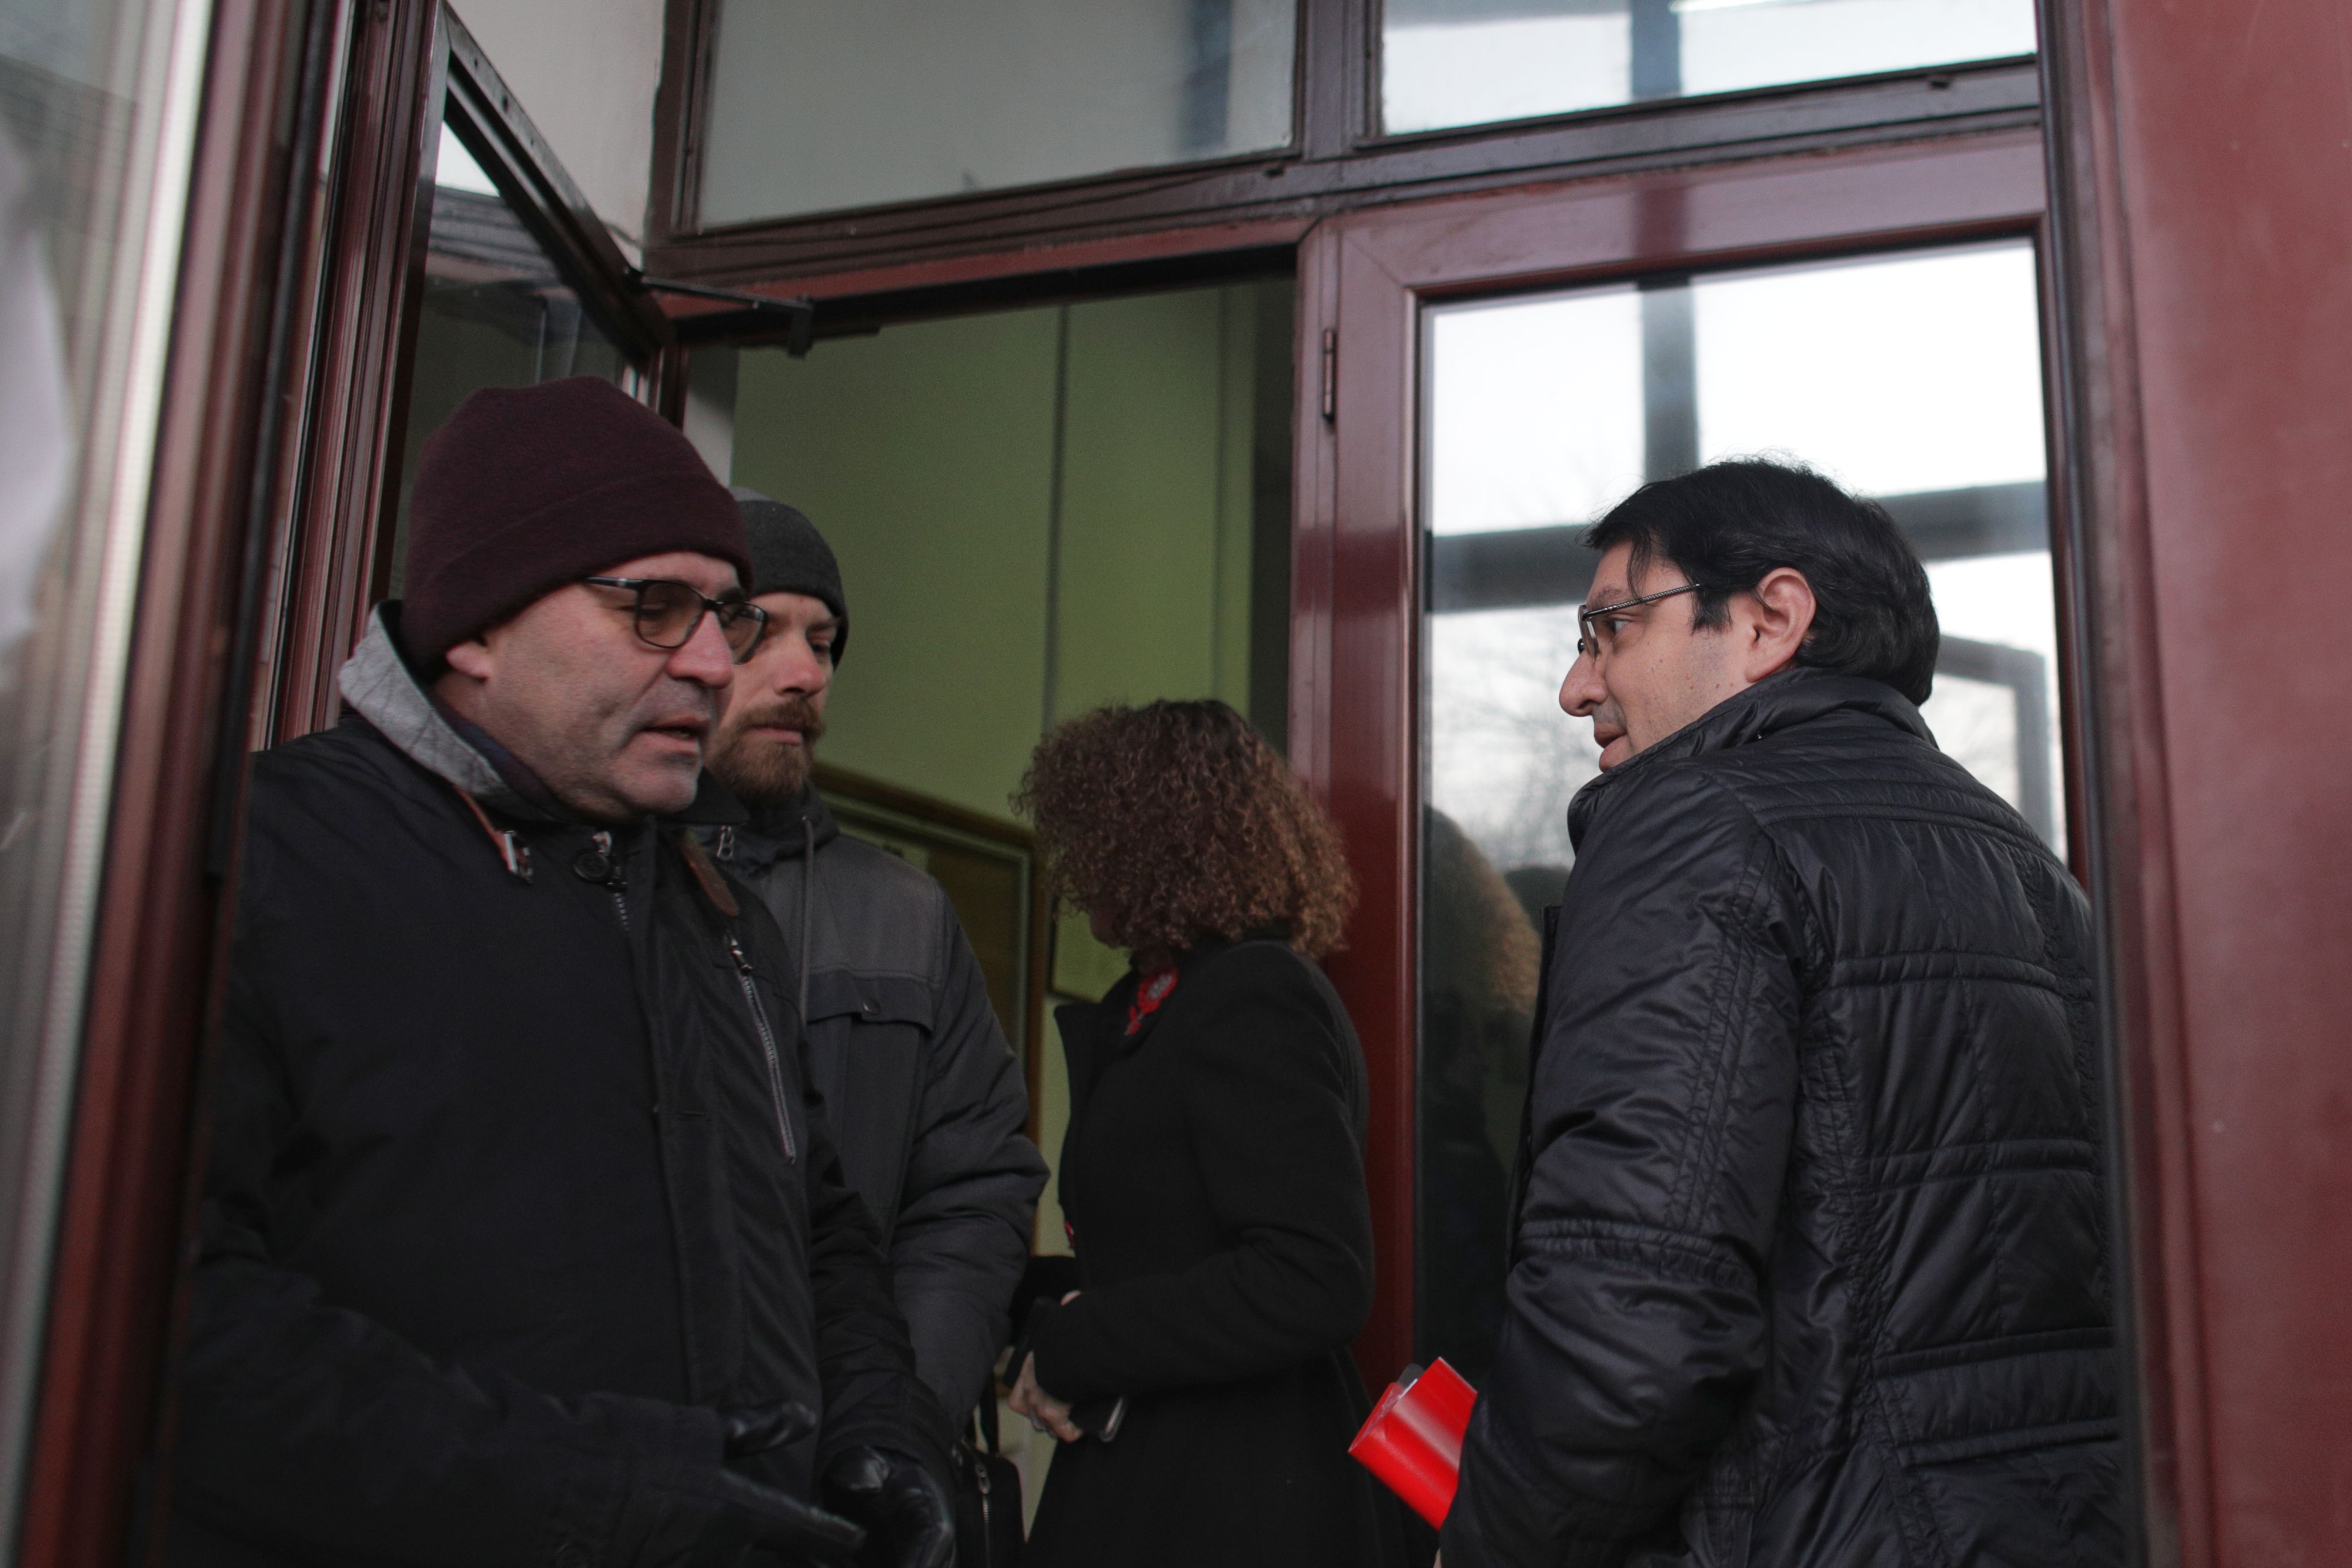 Fostul ministru Bănicioiu, audiat 5 ore în dosarul Colectiv: ”Nu am refuzat niciun ajutor”